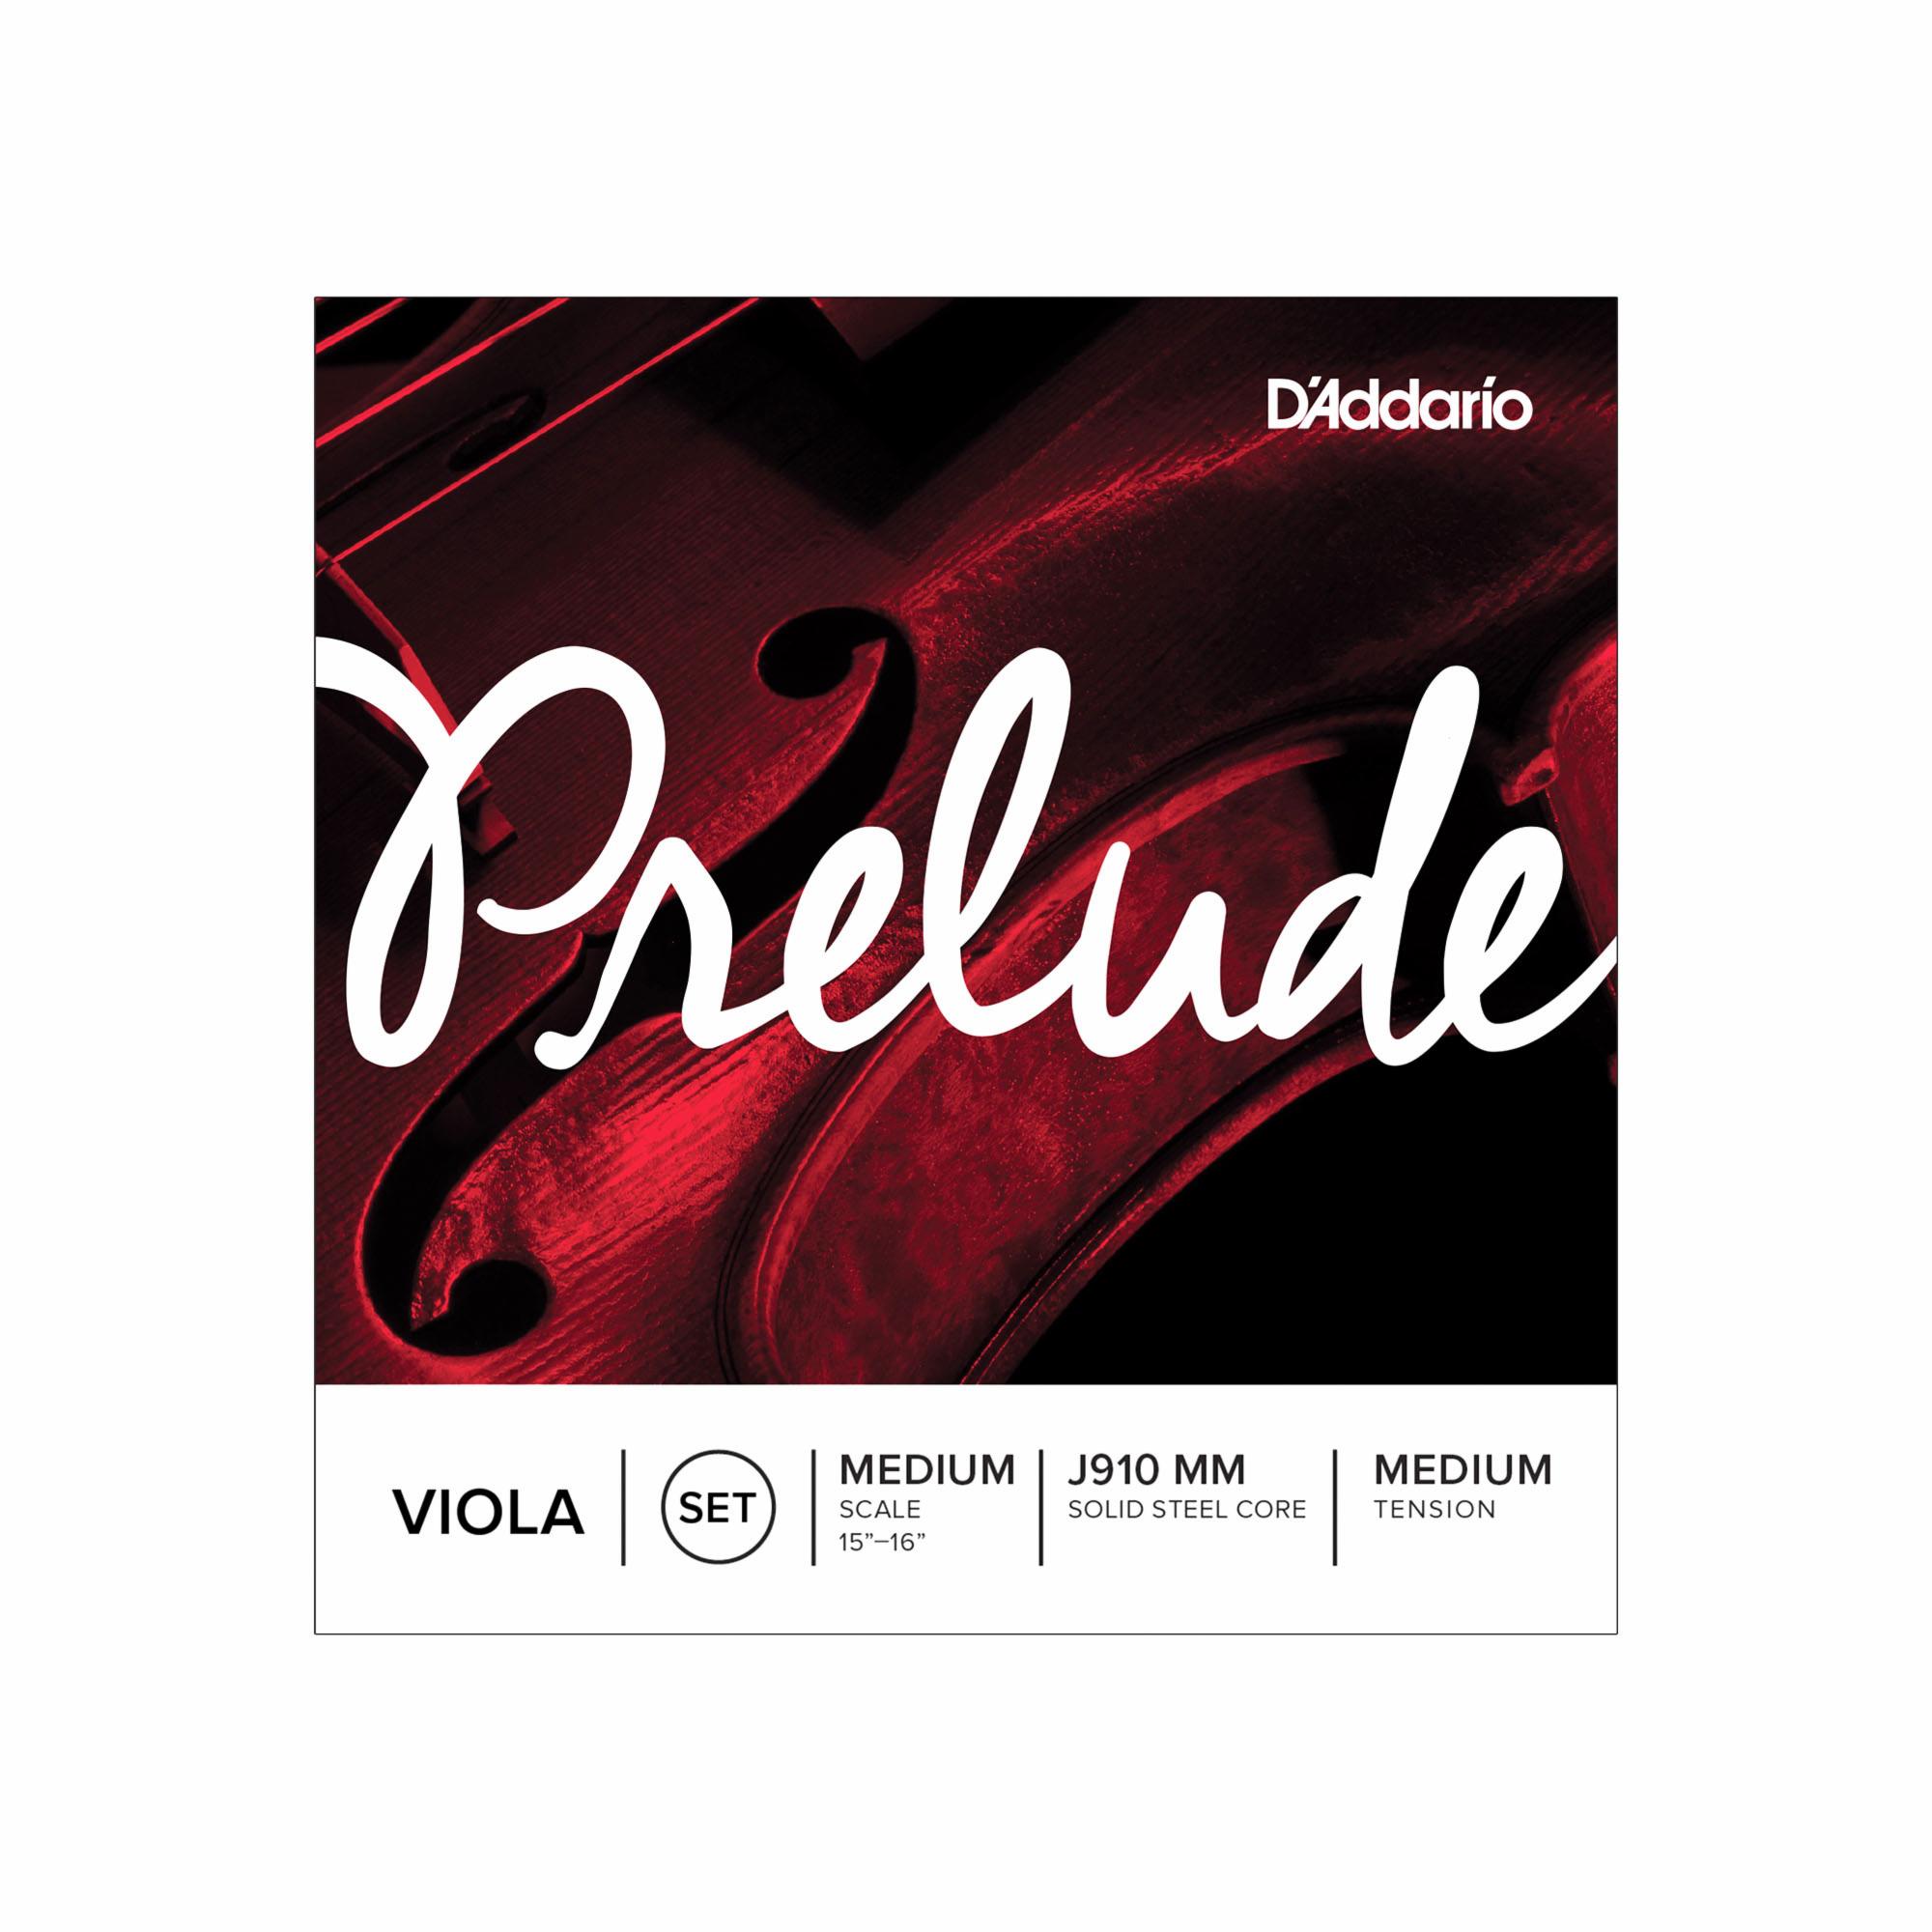 D'Addario Prelude Viola Strings